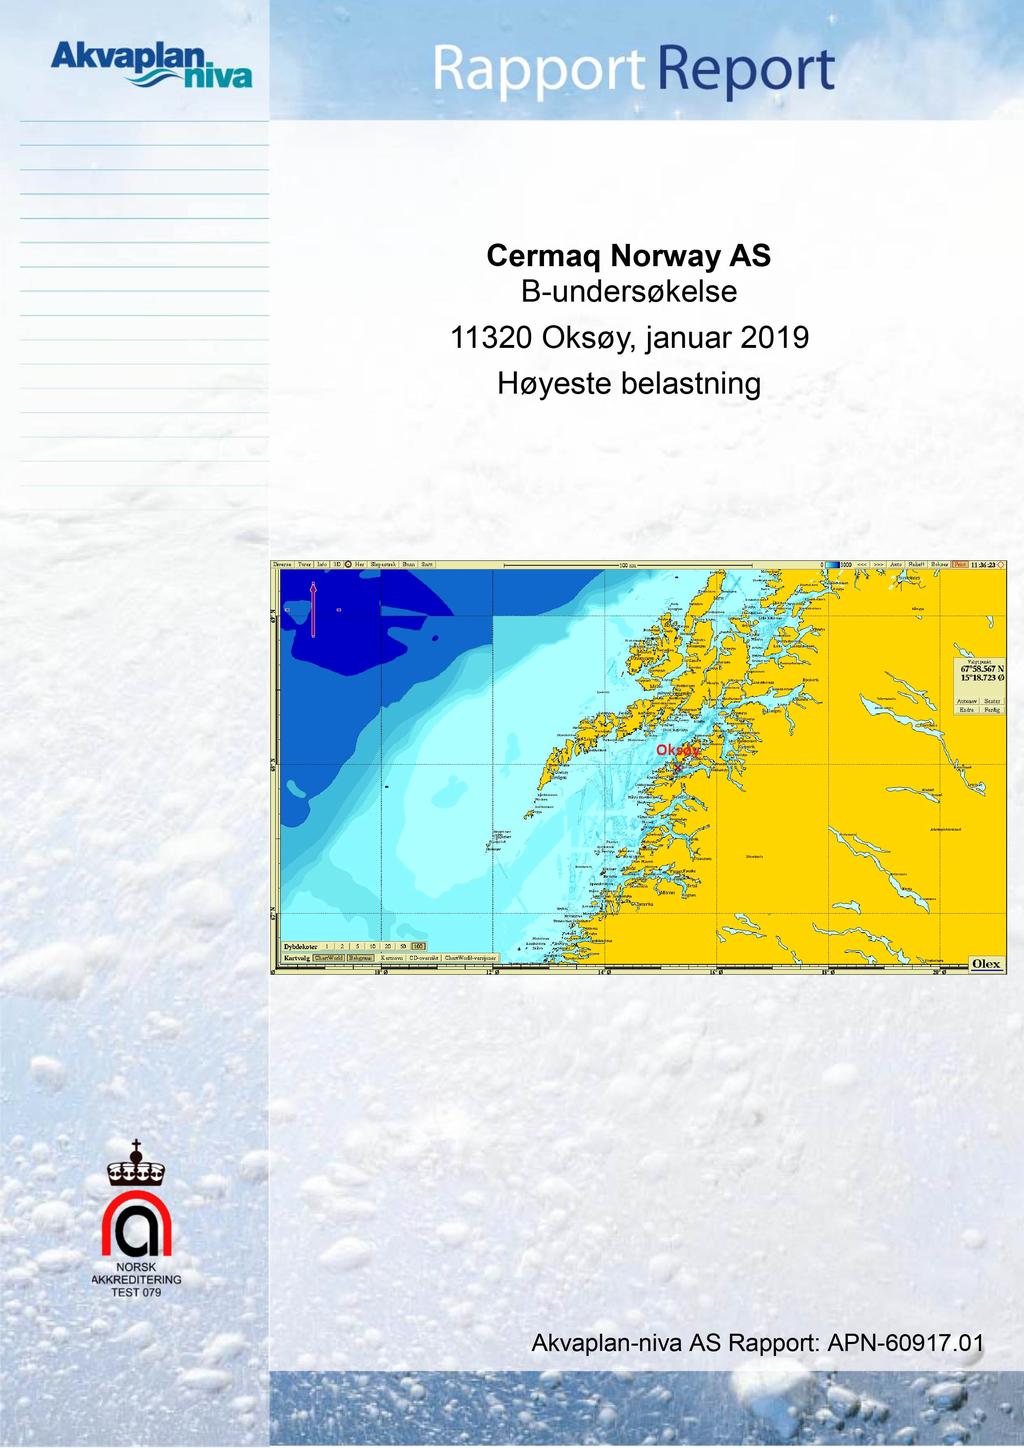 Cermaq Norway AS B-undersøkelse 11320 Oksøy, januar 2019